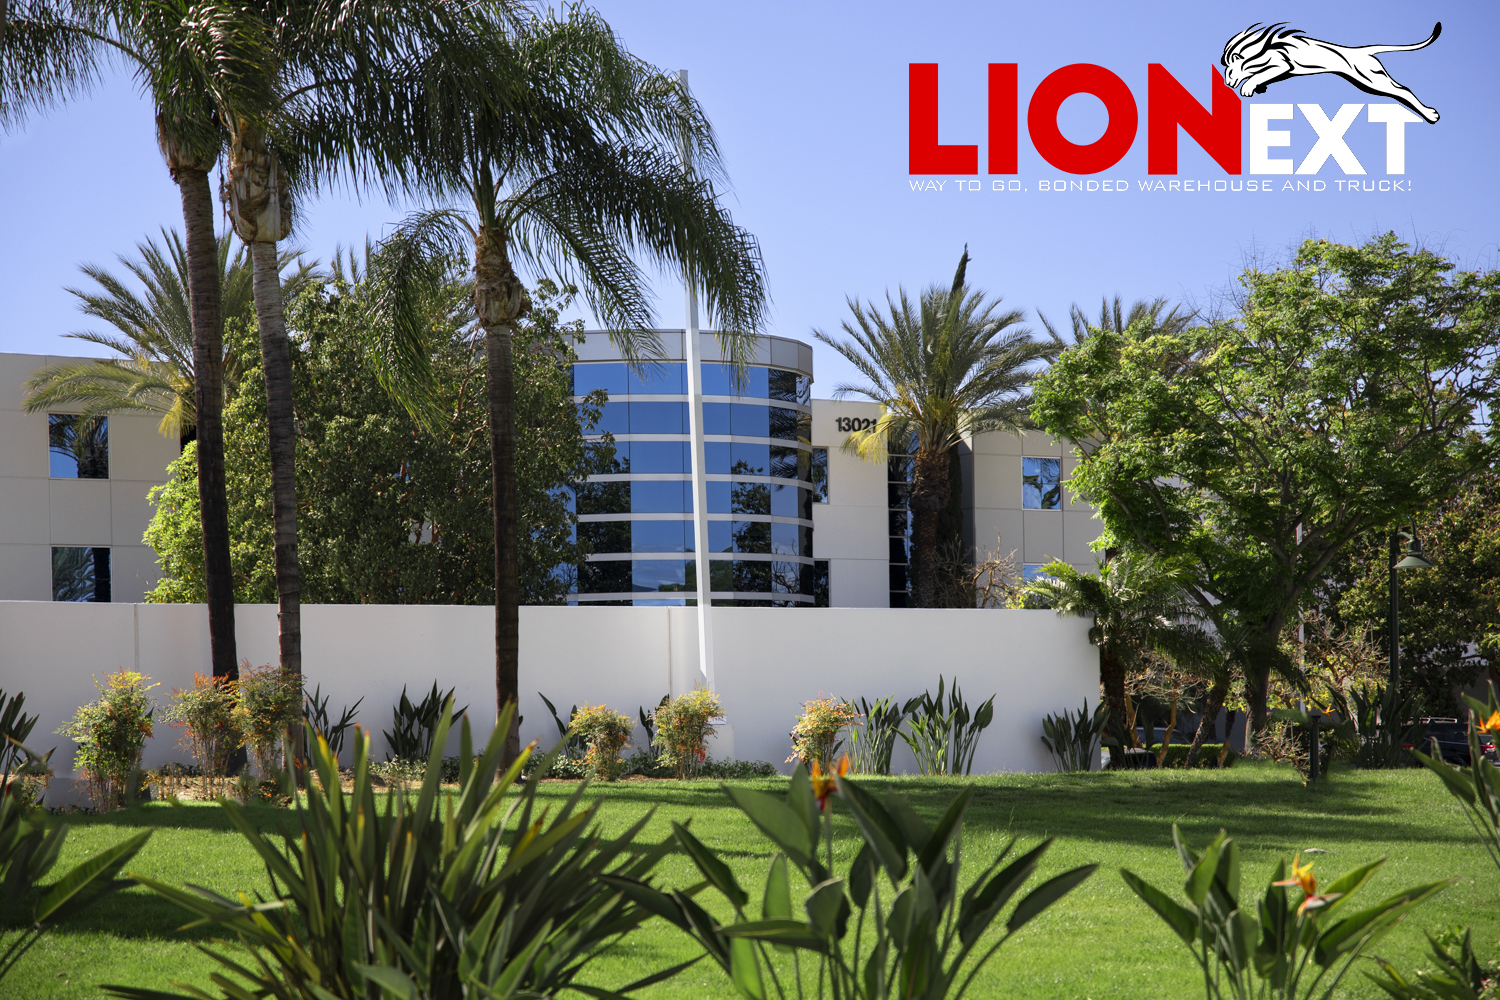 Lionext Inc 洛杉矶海关保税仓 诚招海运操作运营经理 2 名 招聘广告